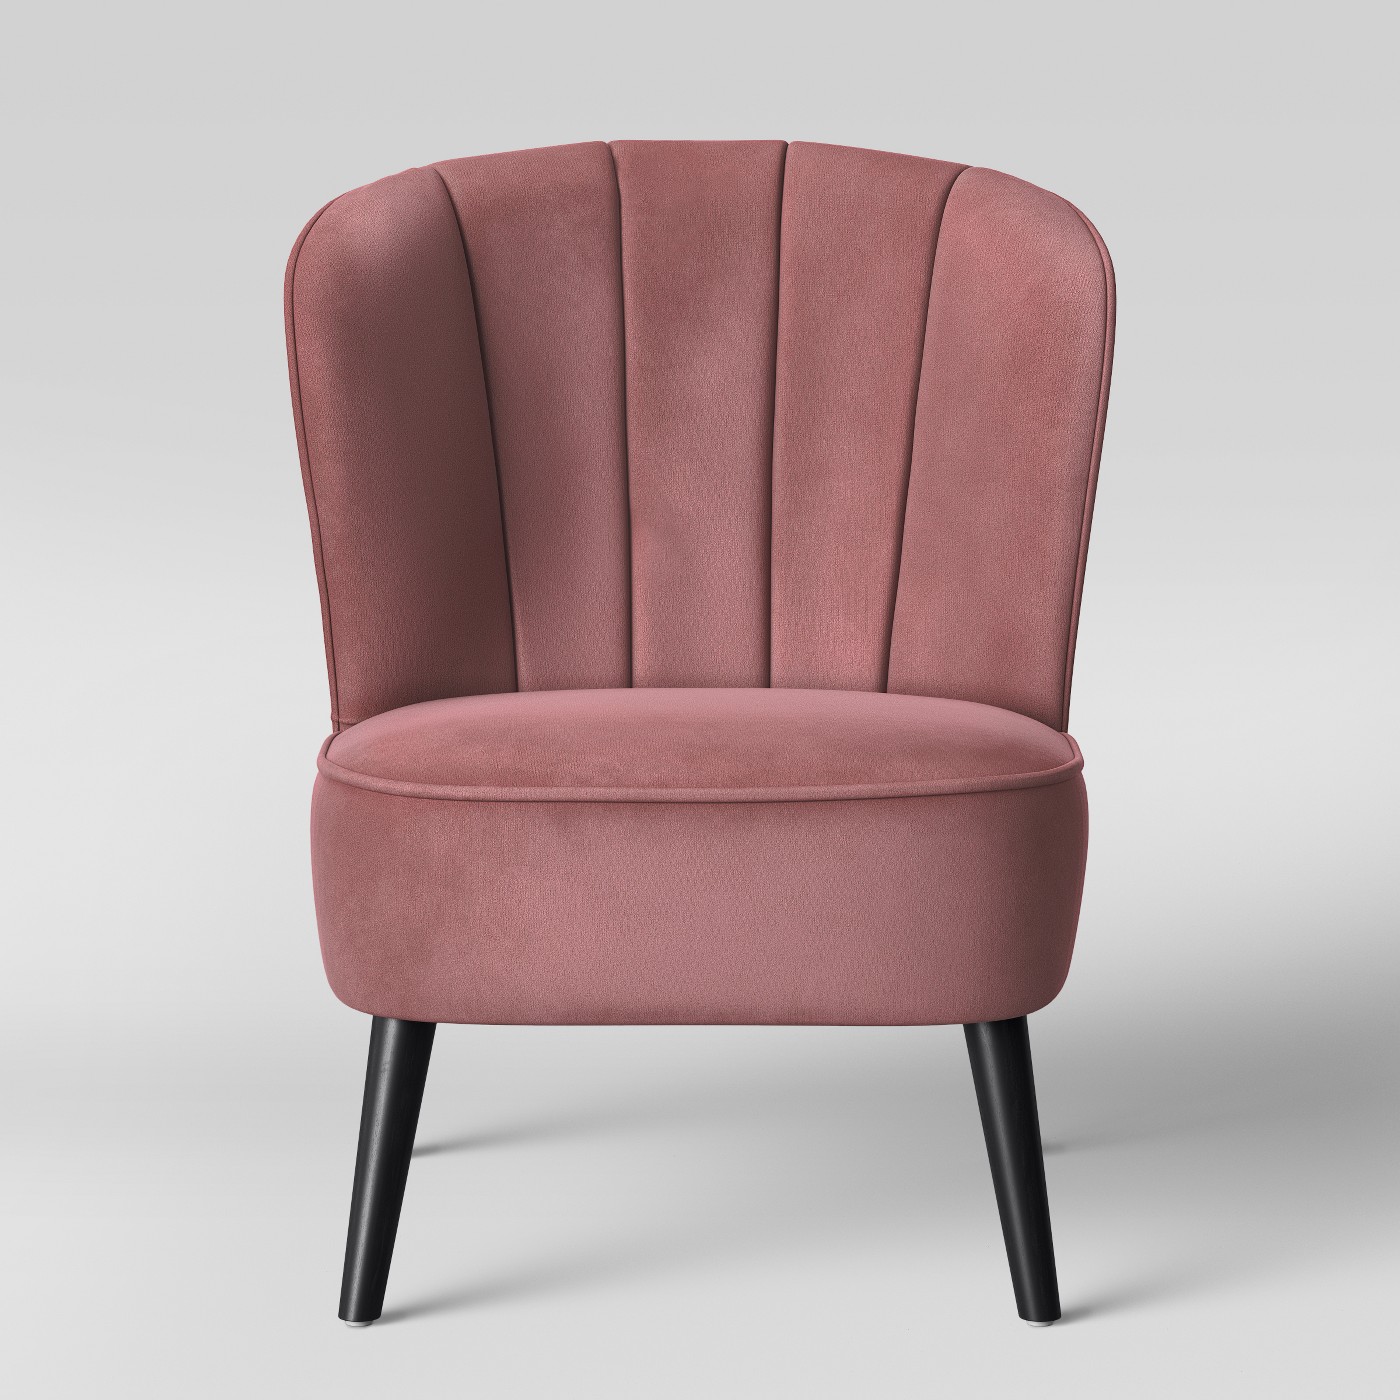 Opalhouse Primrose Chanel Tufted Back Velvet Accent Chair